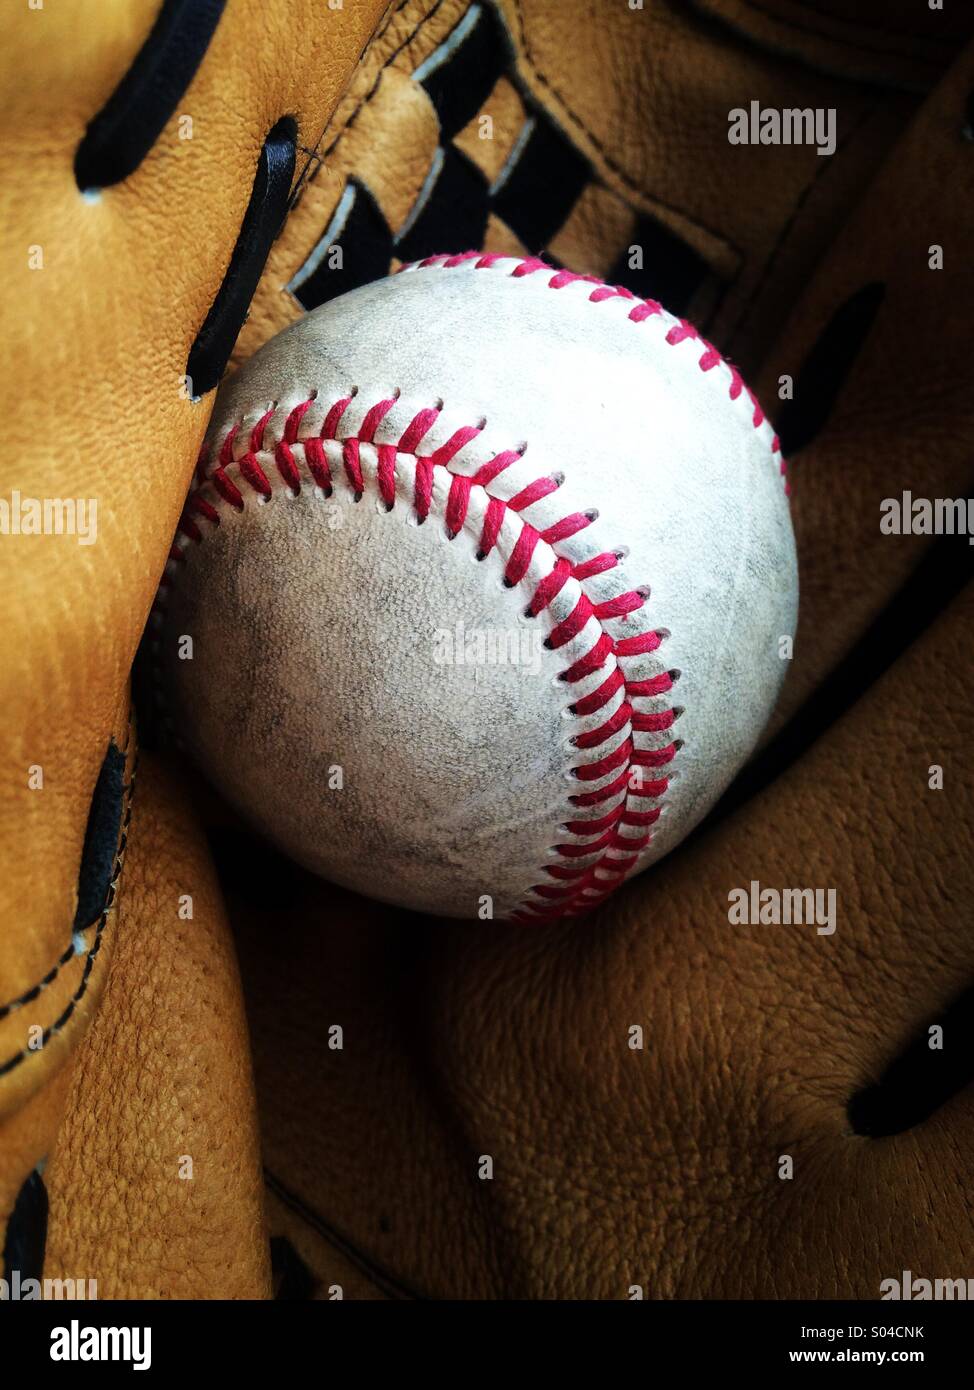 Baseball in a glove Stock Photo